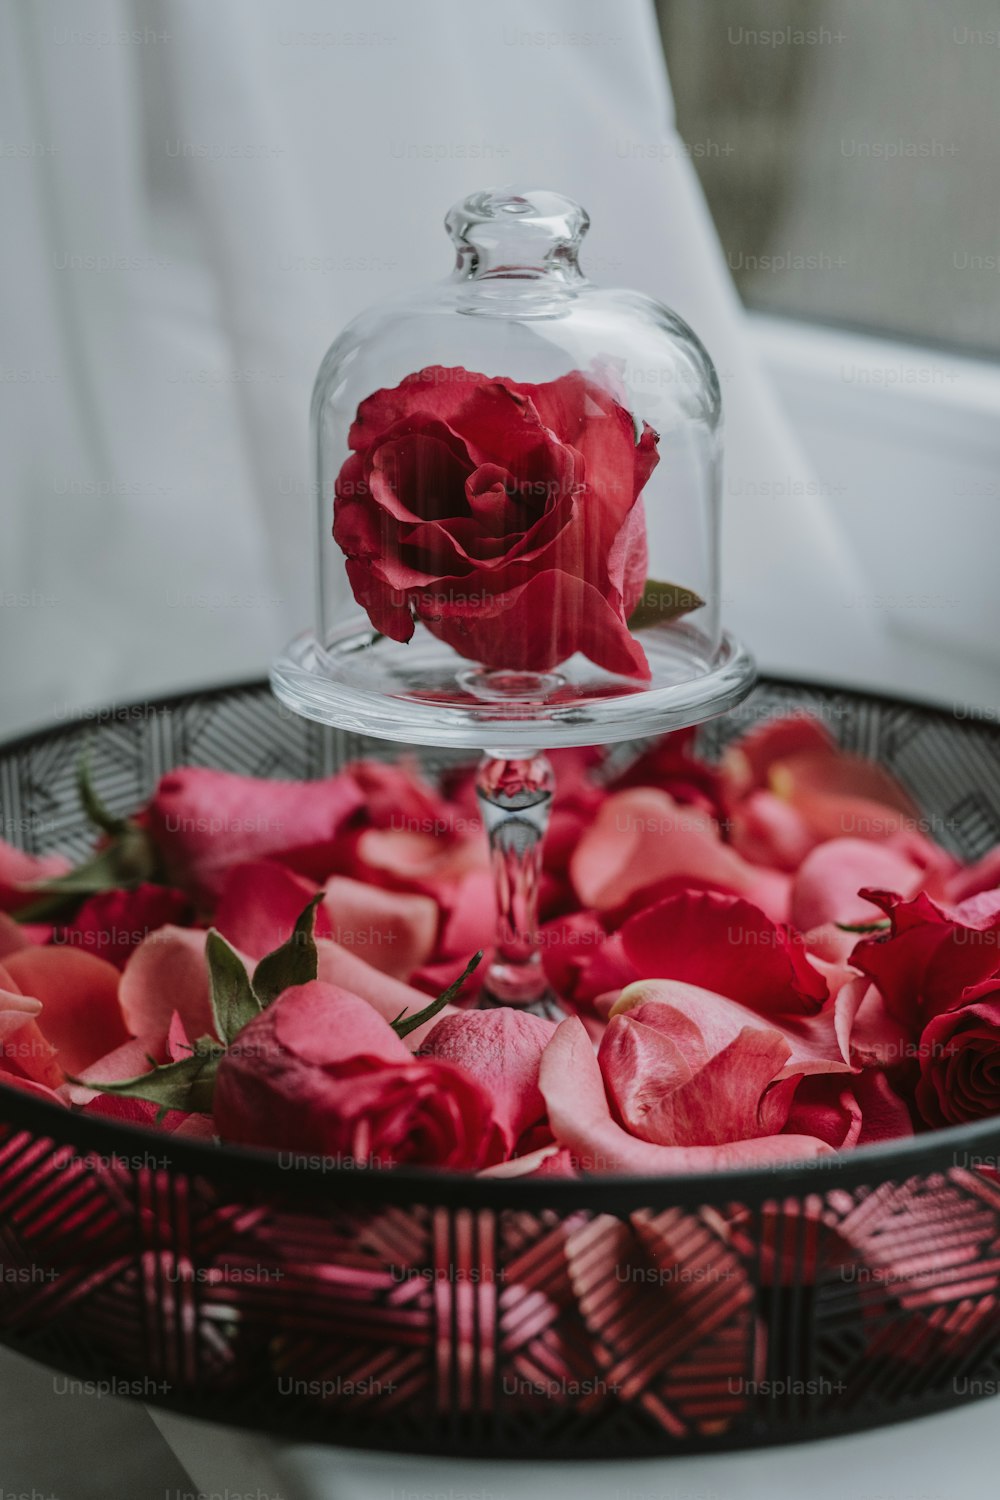 ein Glas-Clochel mit einer roten Rose darin